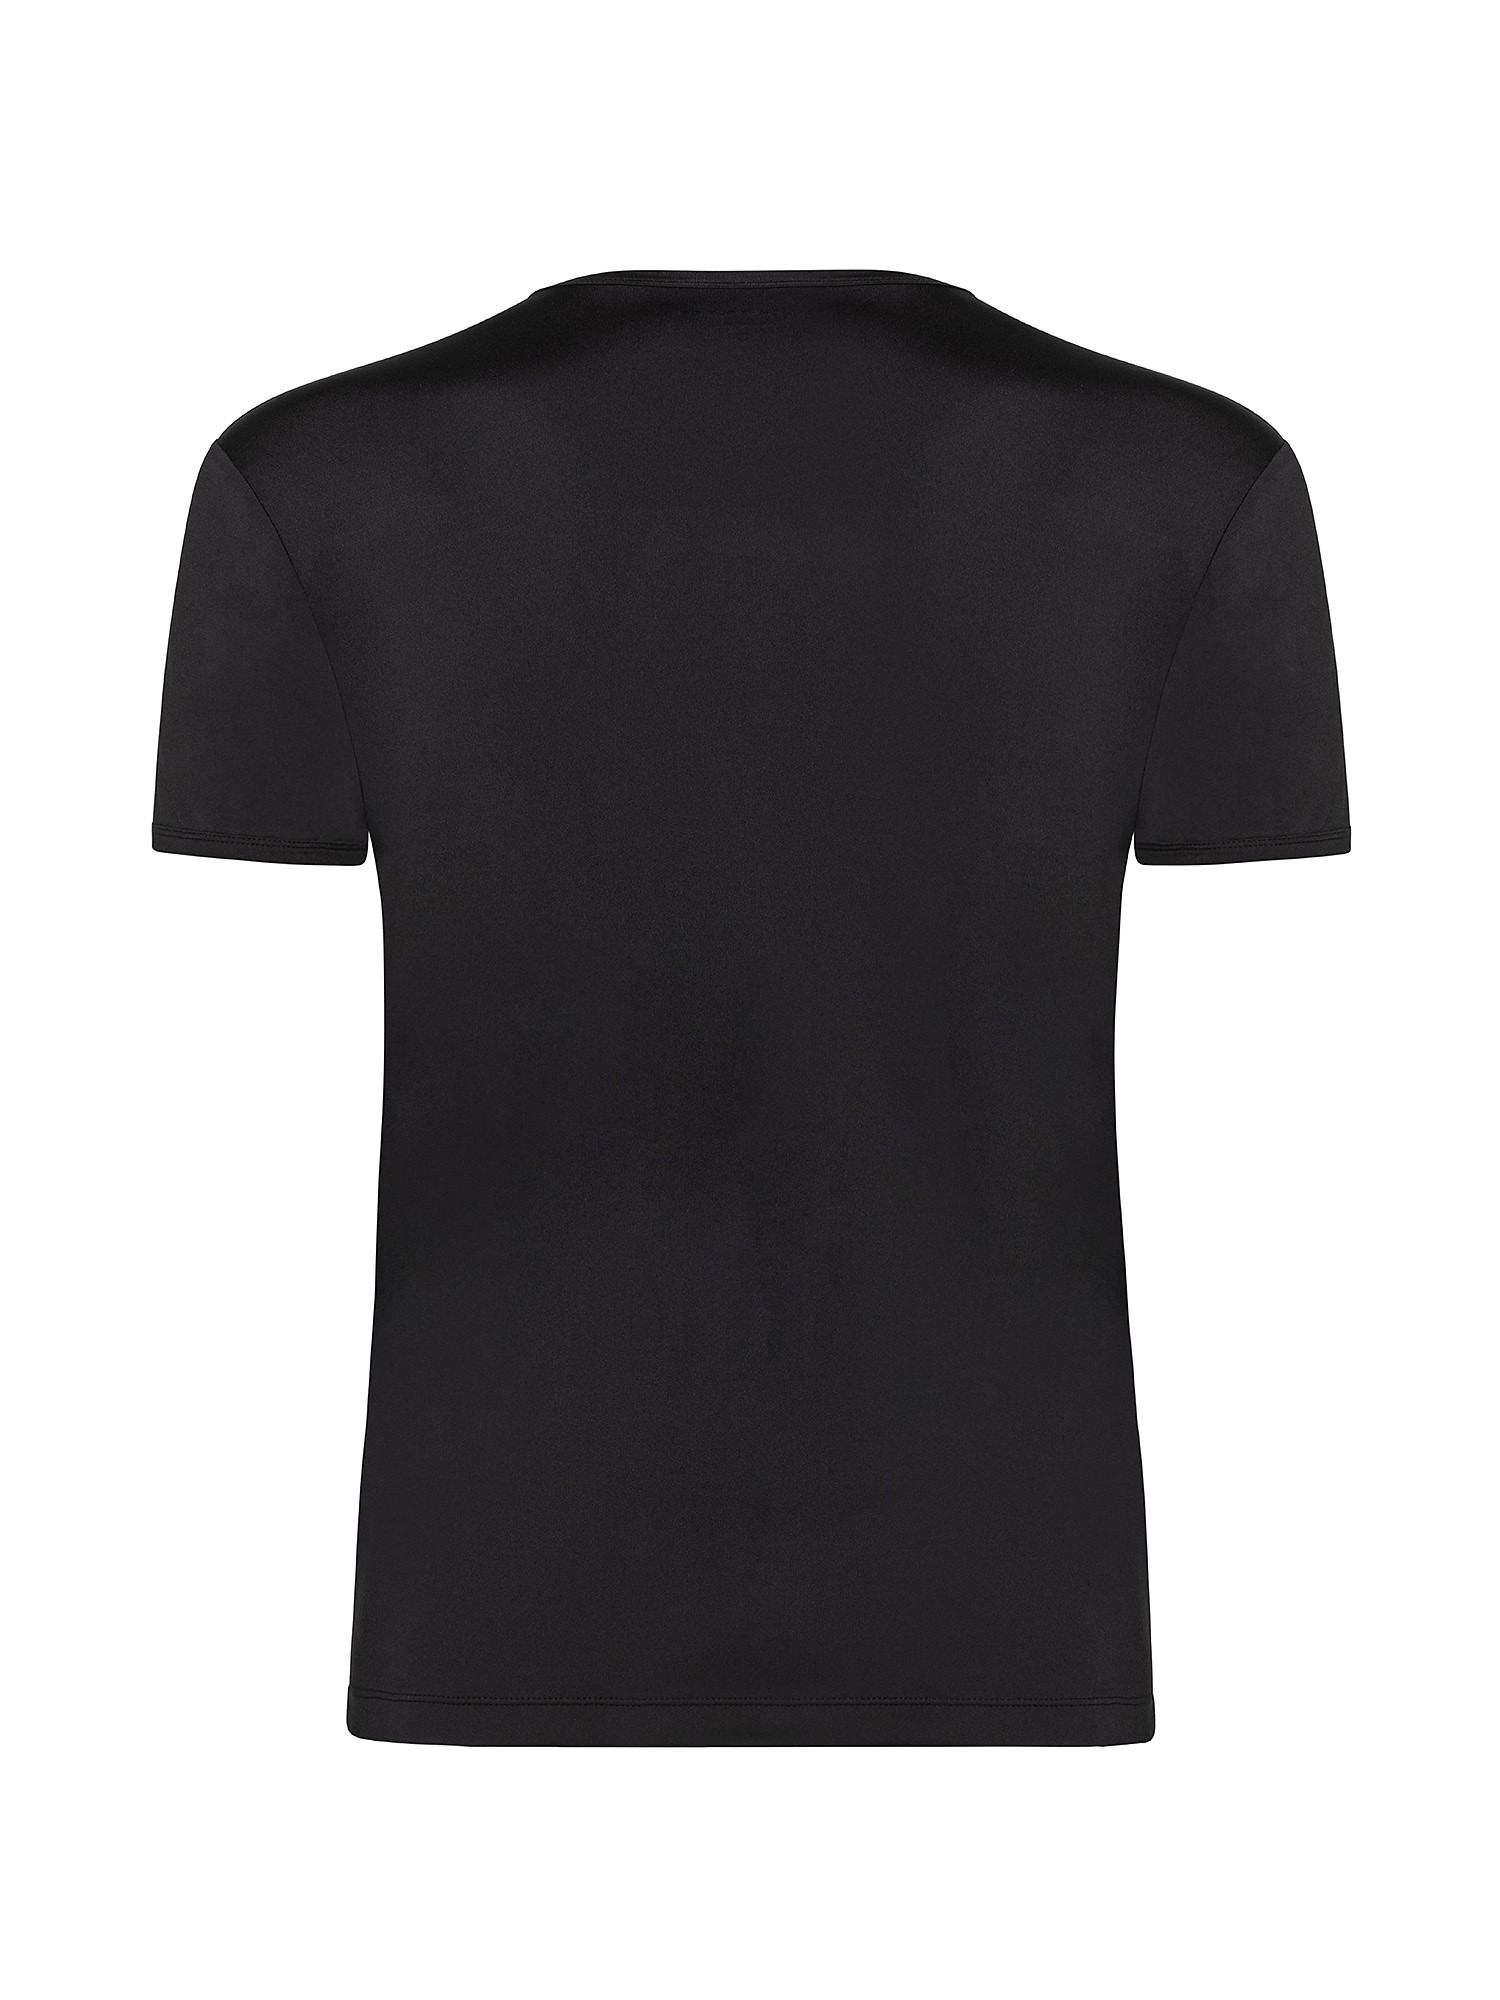 Solid color microfiber crew neck T-shirt, Black, large image number 1